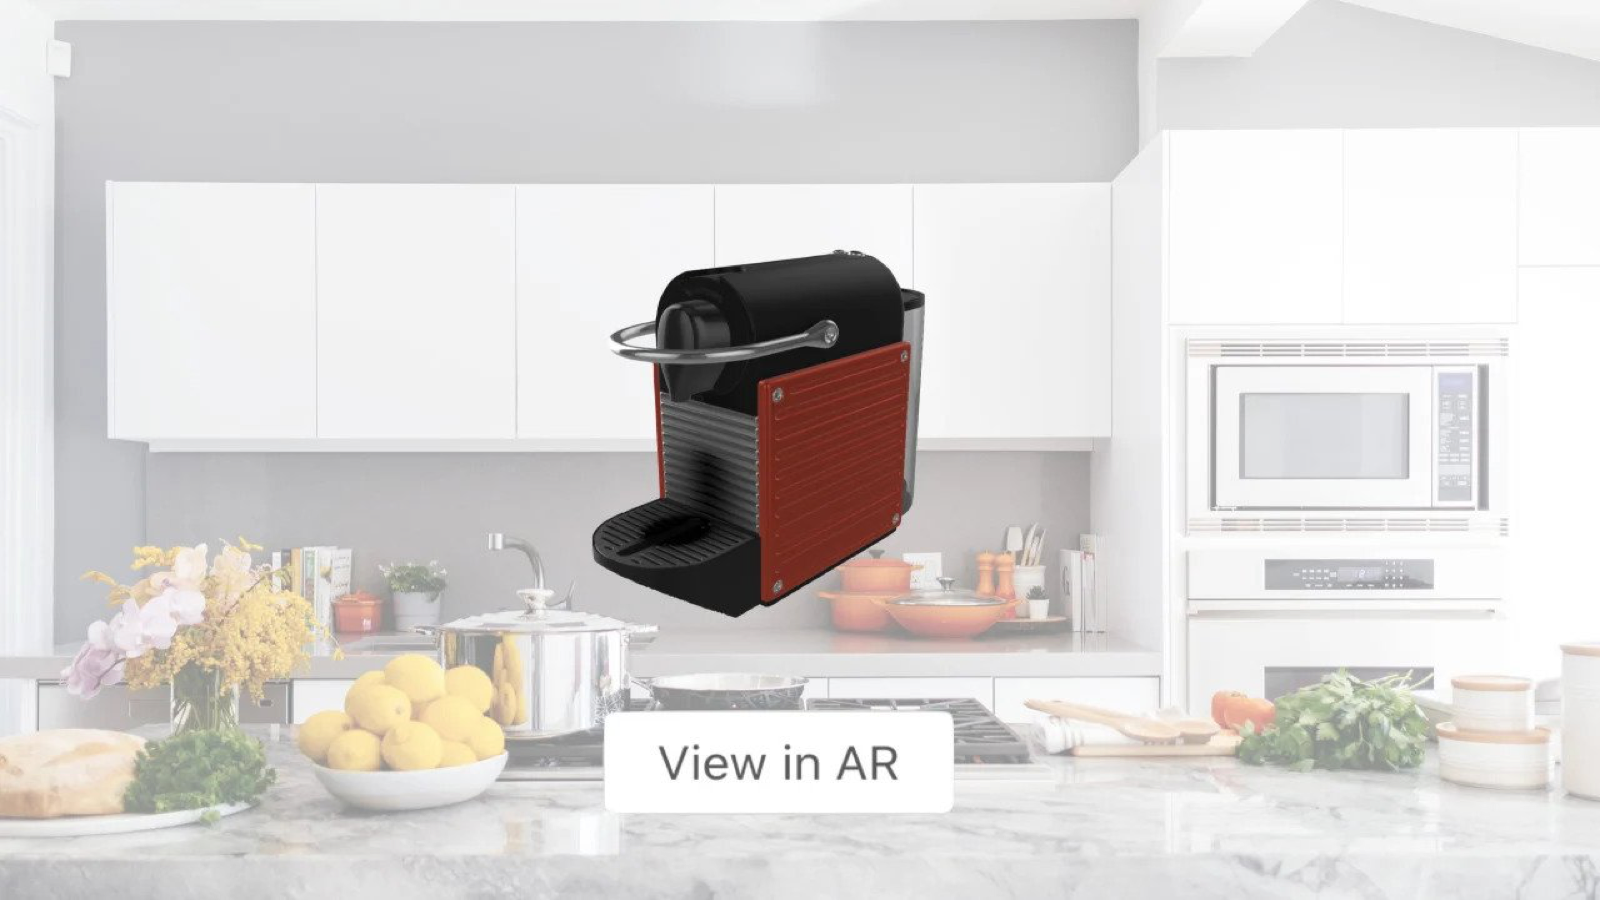 Möjliggör för kunder att placera produkter i deras hem med AR